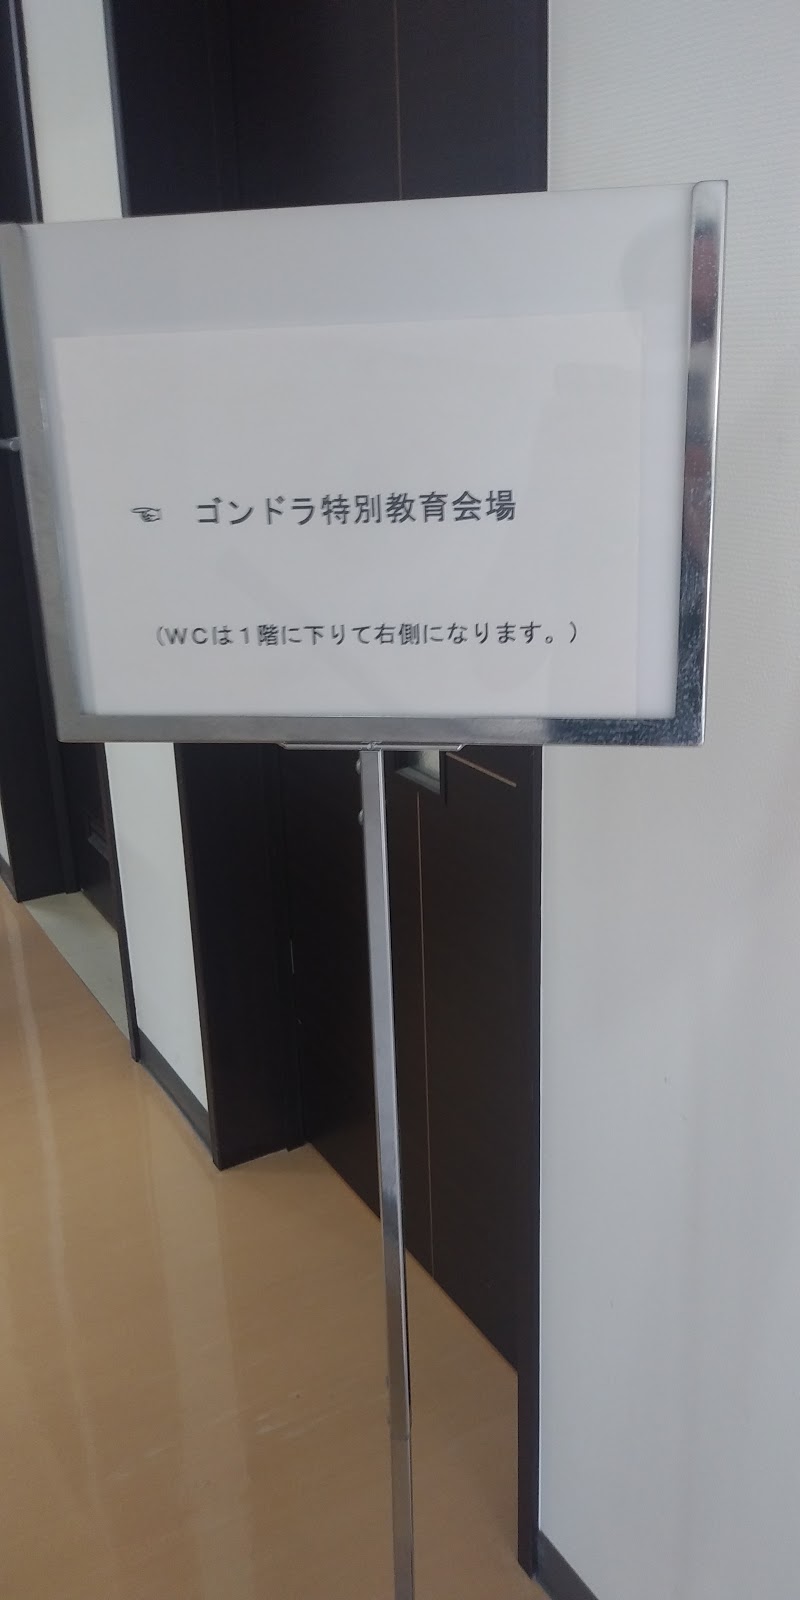 日本ビソー(株) レンタル埼玉支店